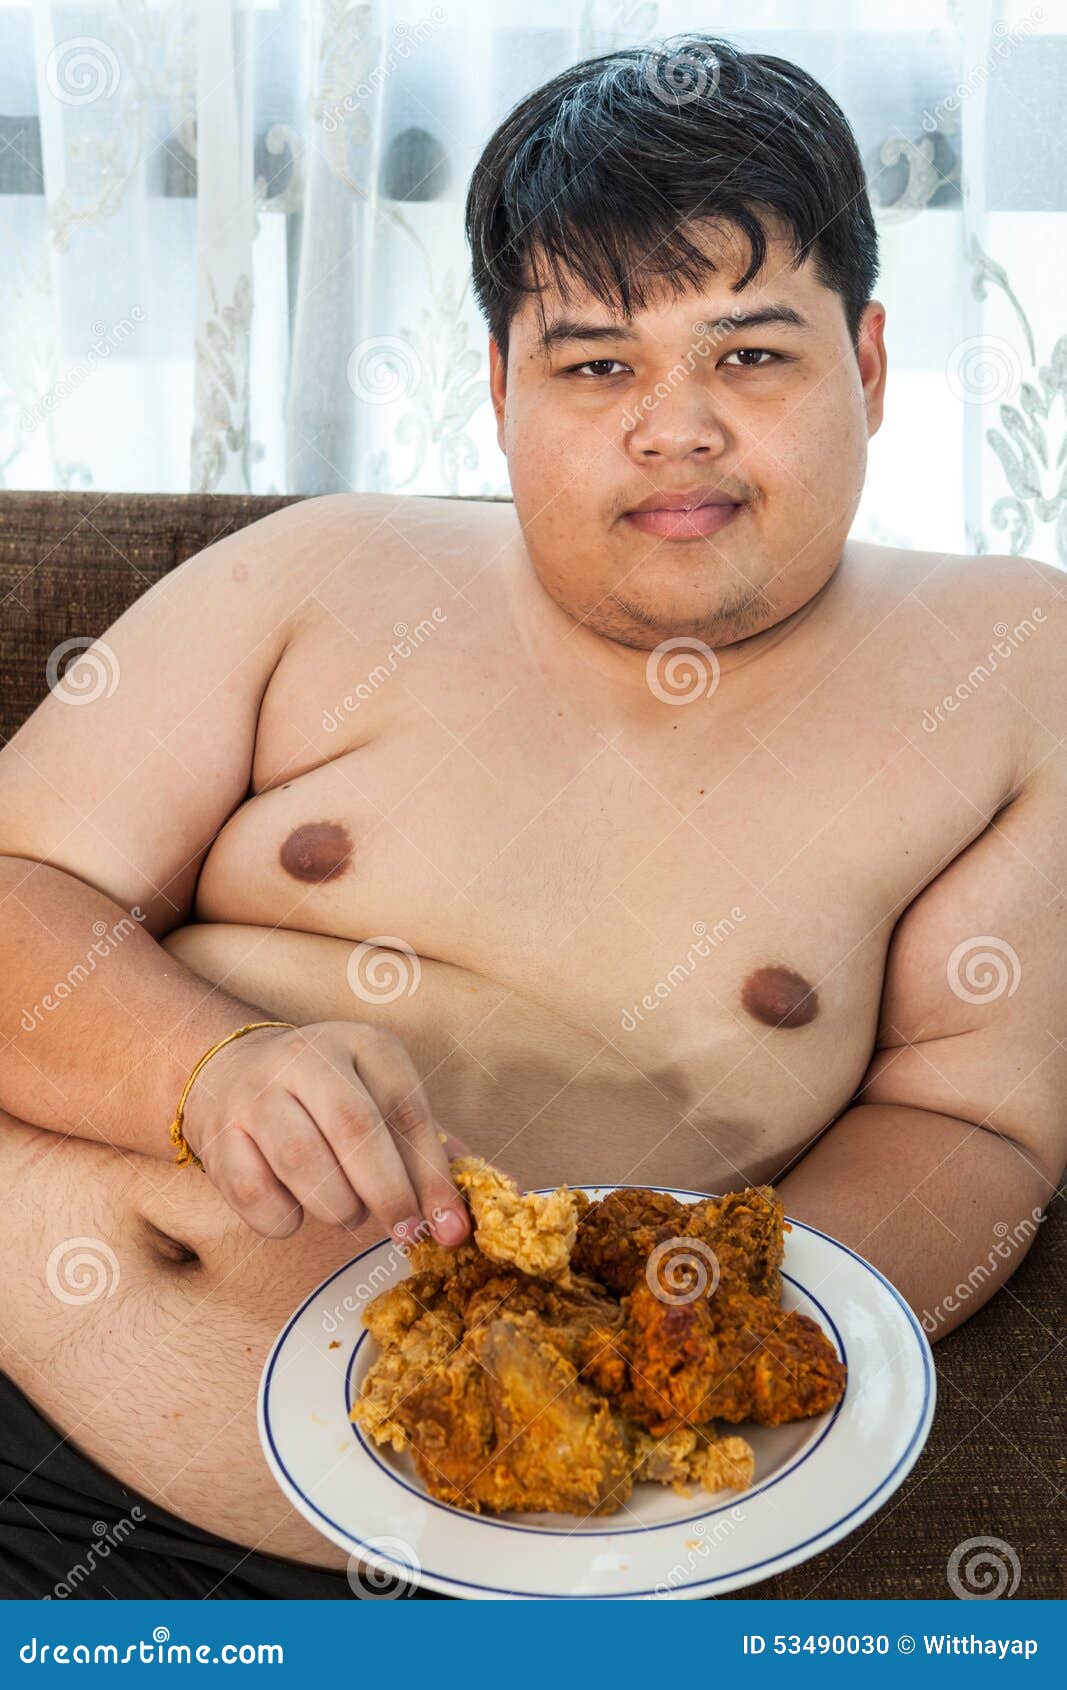 Asian Fat Guy 47